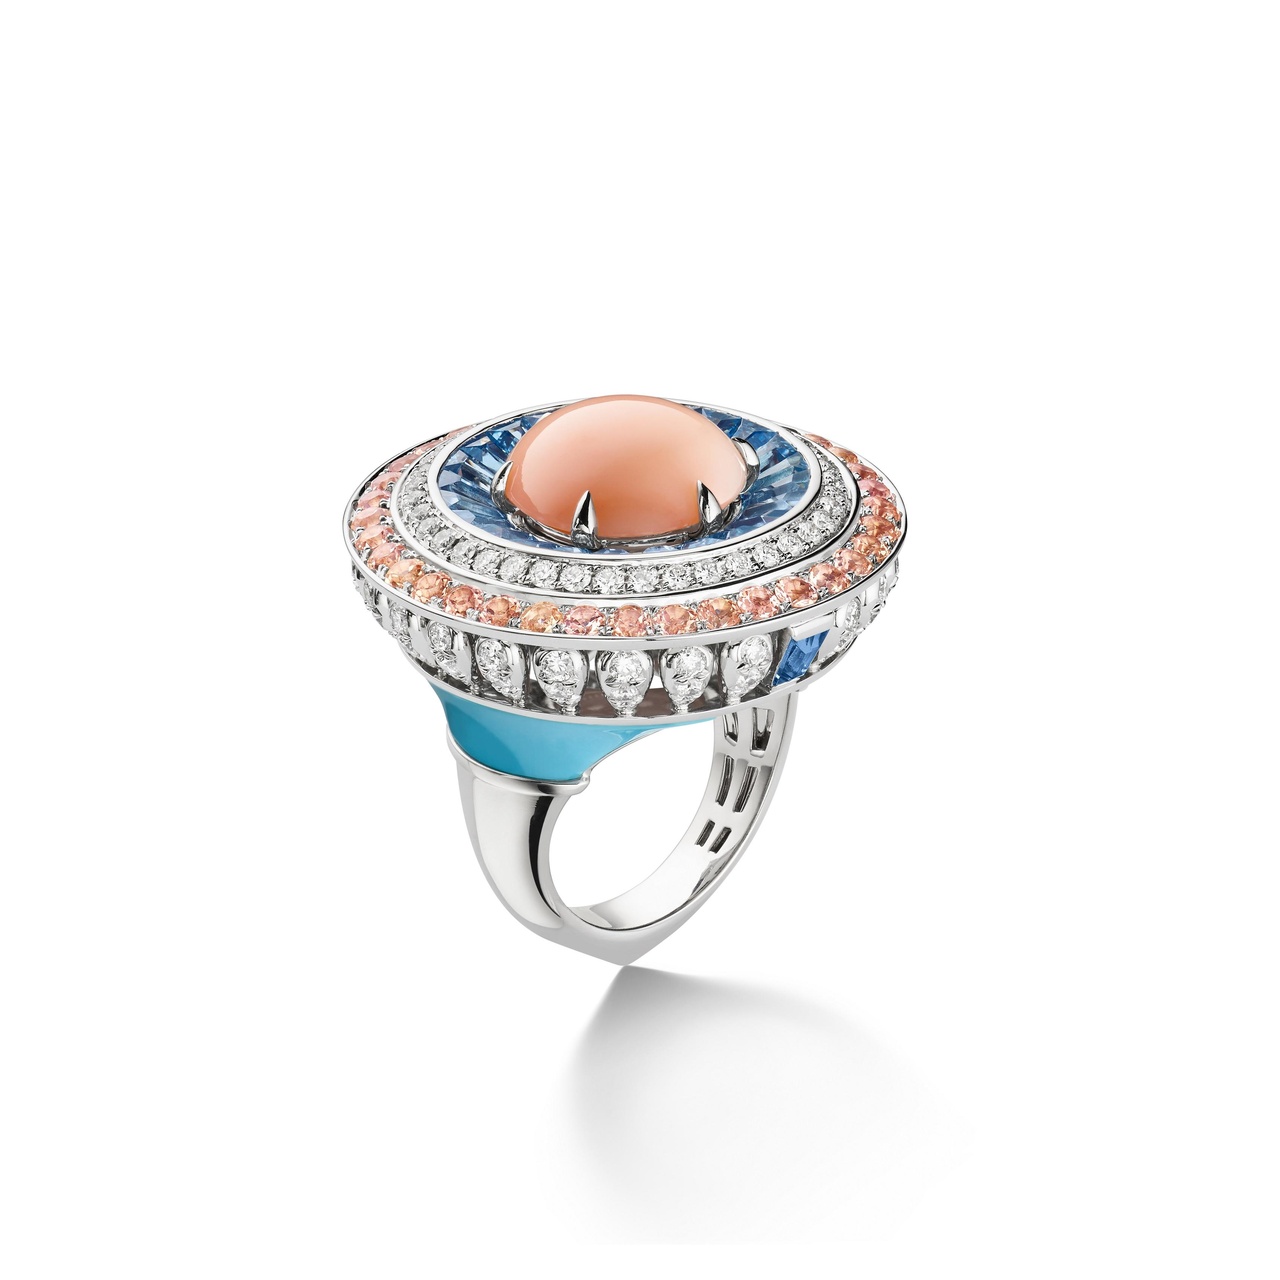 Perspectives de Chaumet - Lux白金戒指，鑲嵌一顆重約6.63克拉蛋形切割如天使肌膚的粉紅珊瑚，長階梯形切割海藍寶石、明亮式切割鑽石及綠松石。